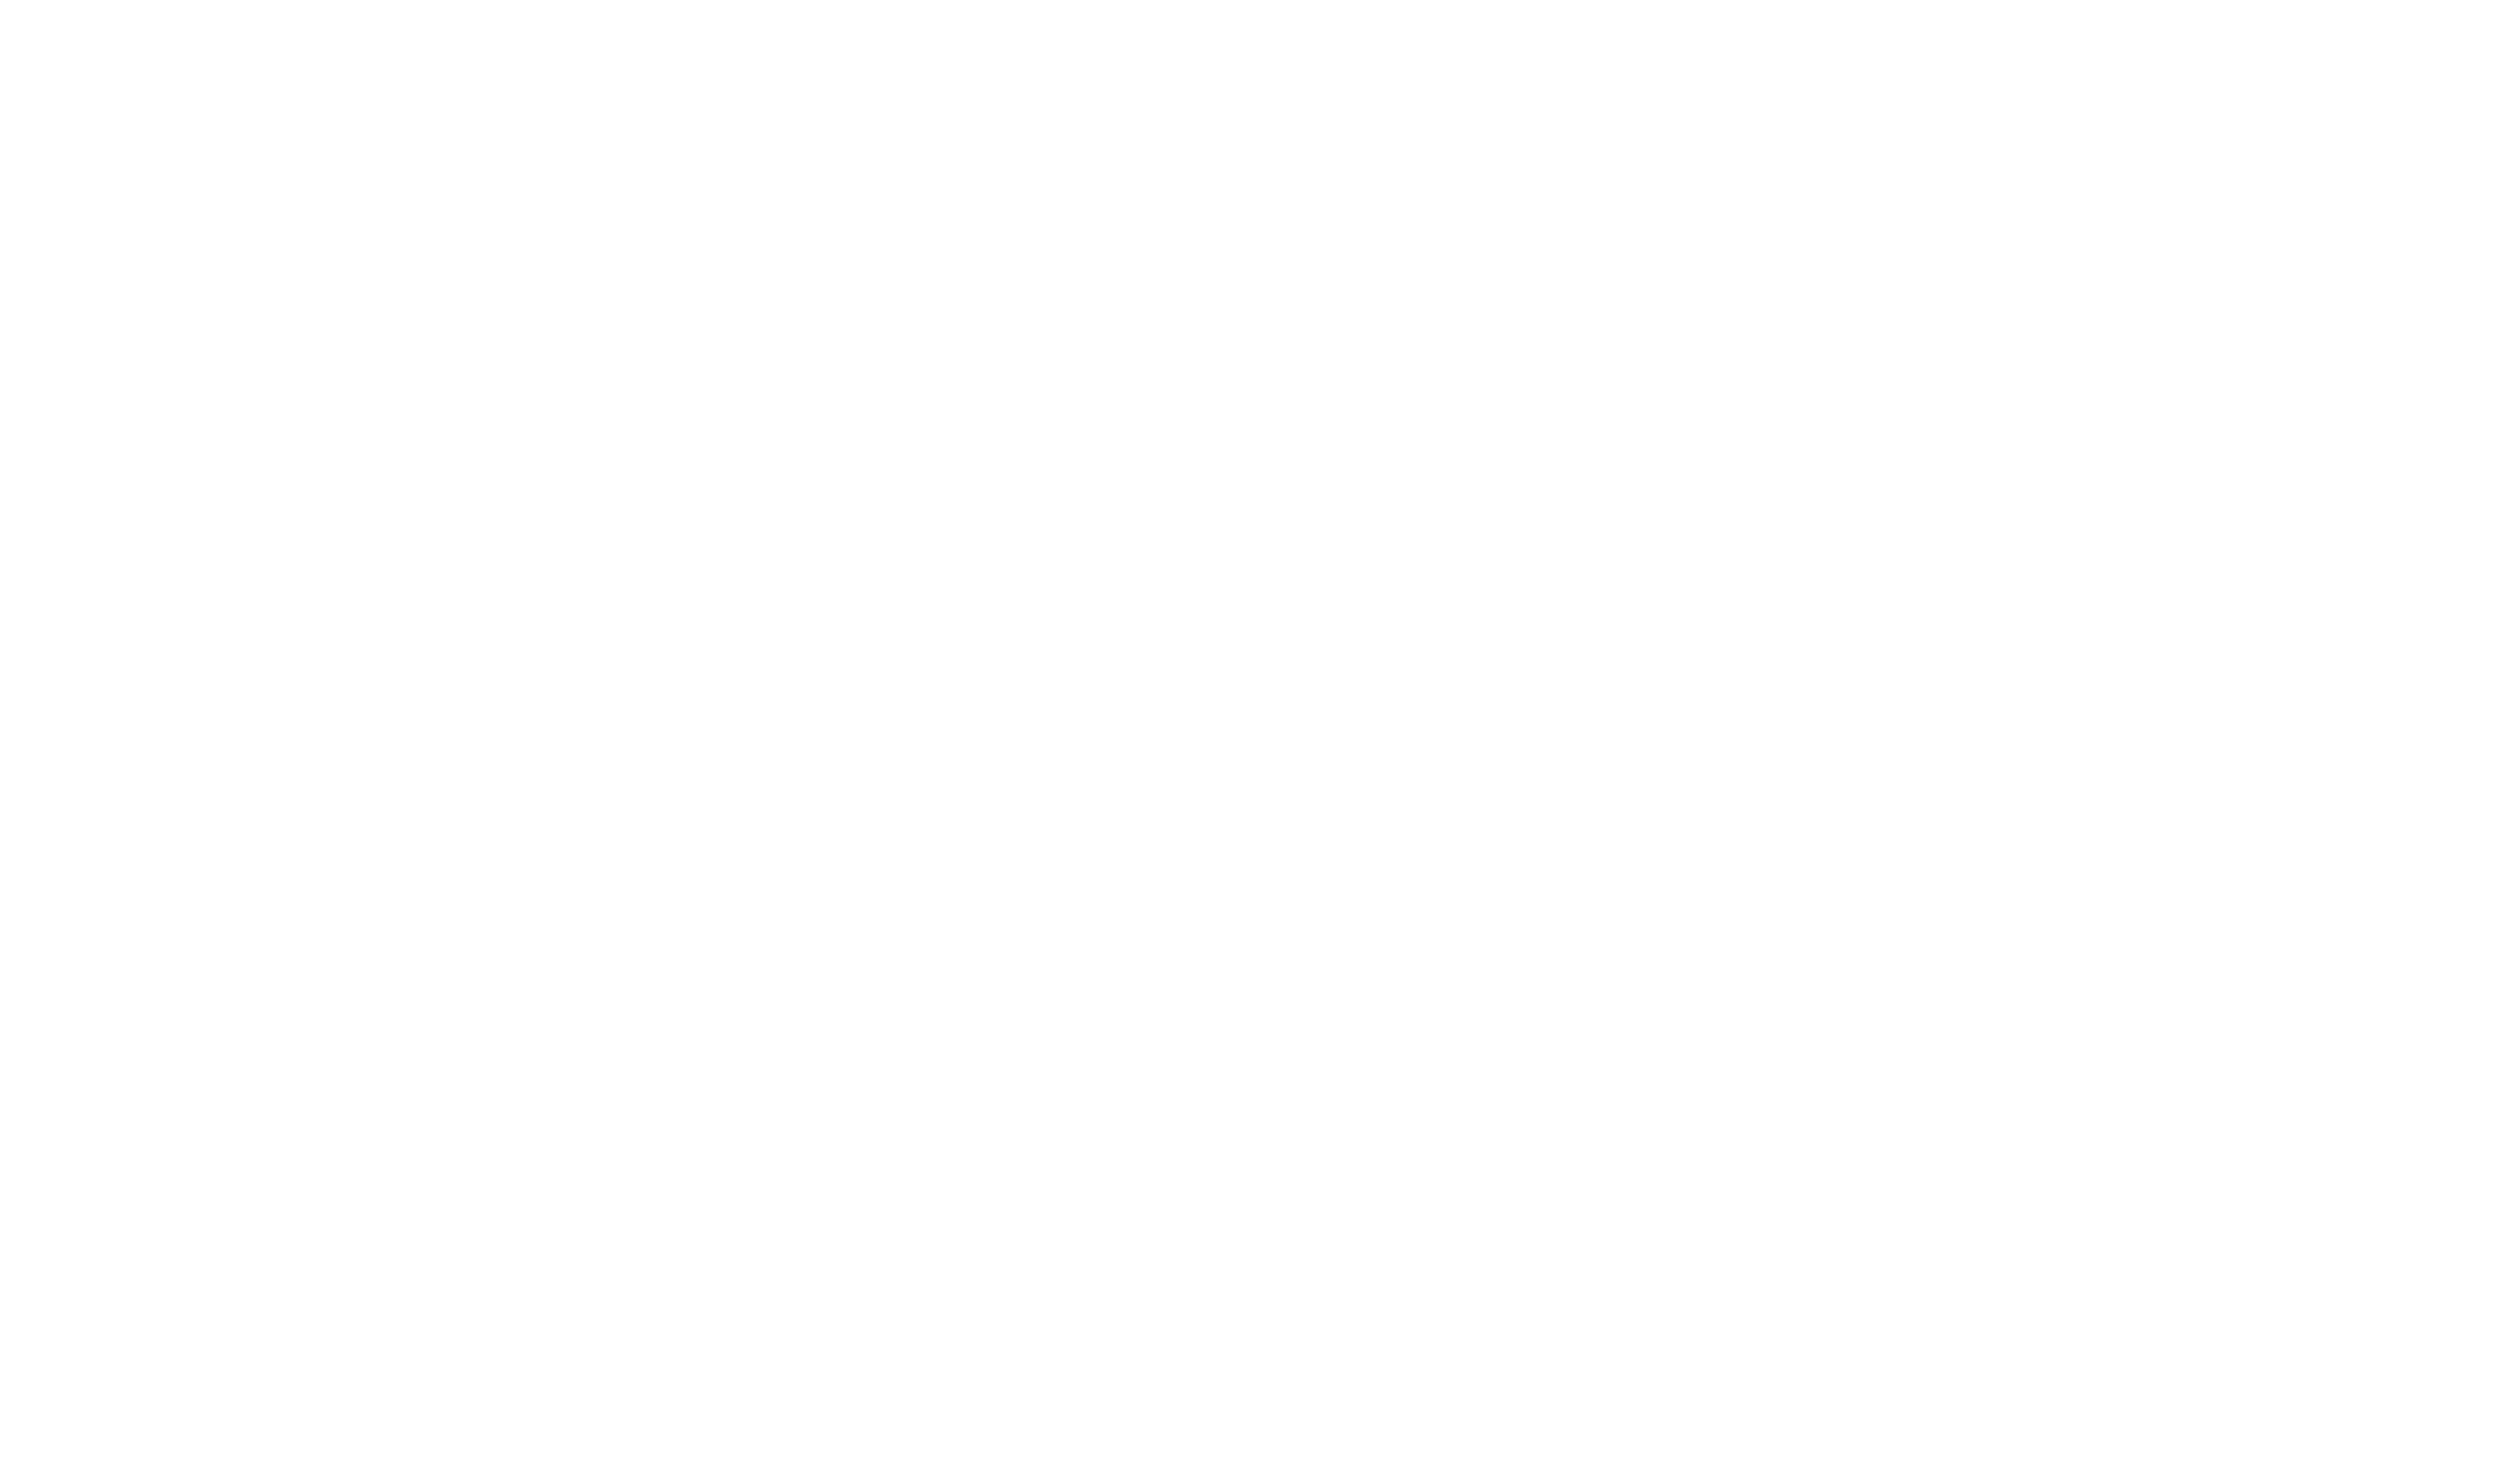 ASHS Foundation